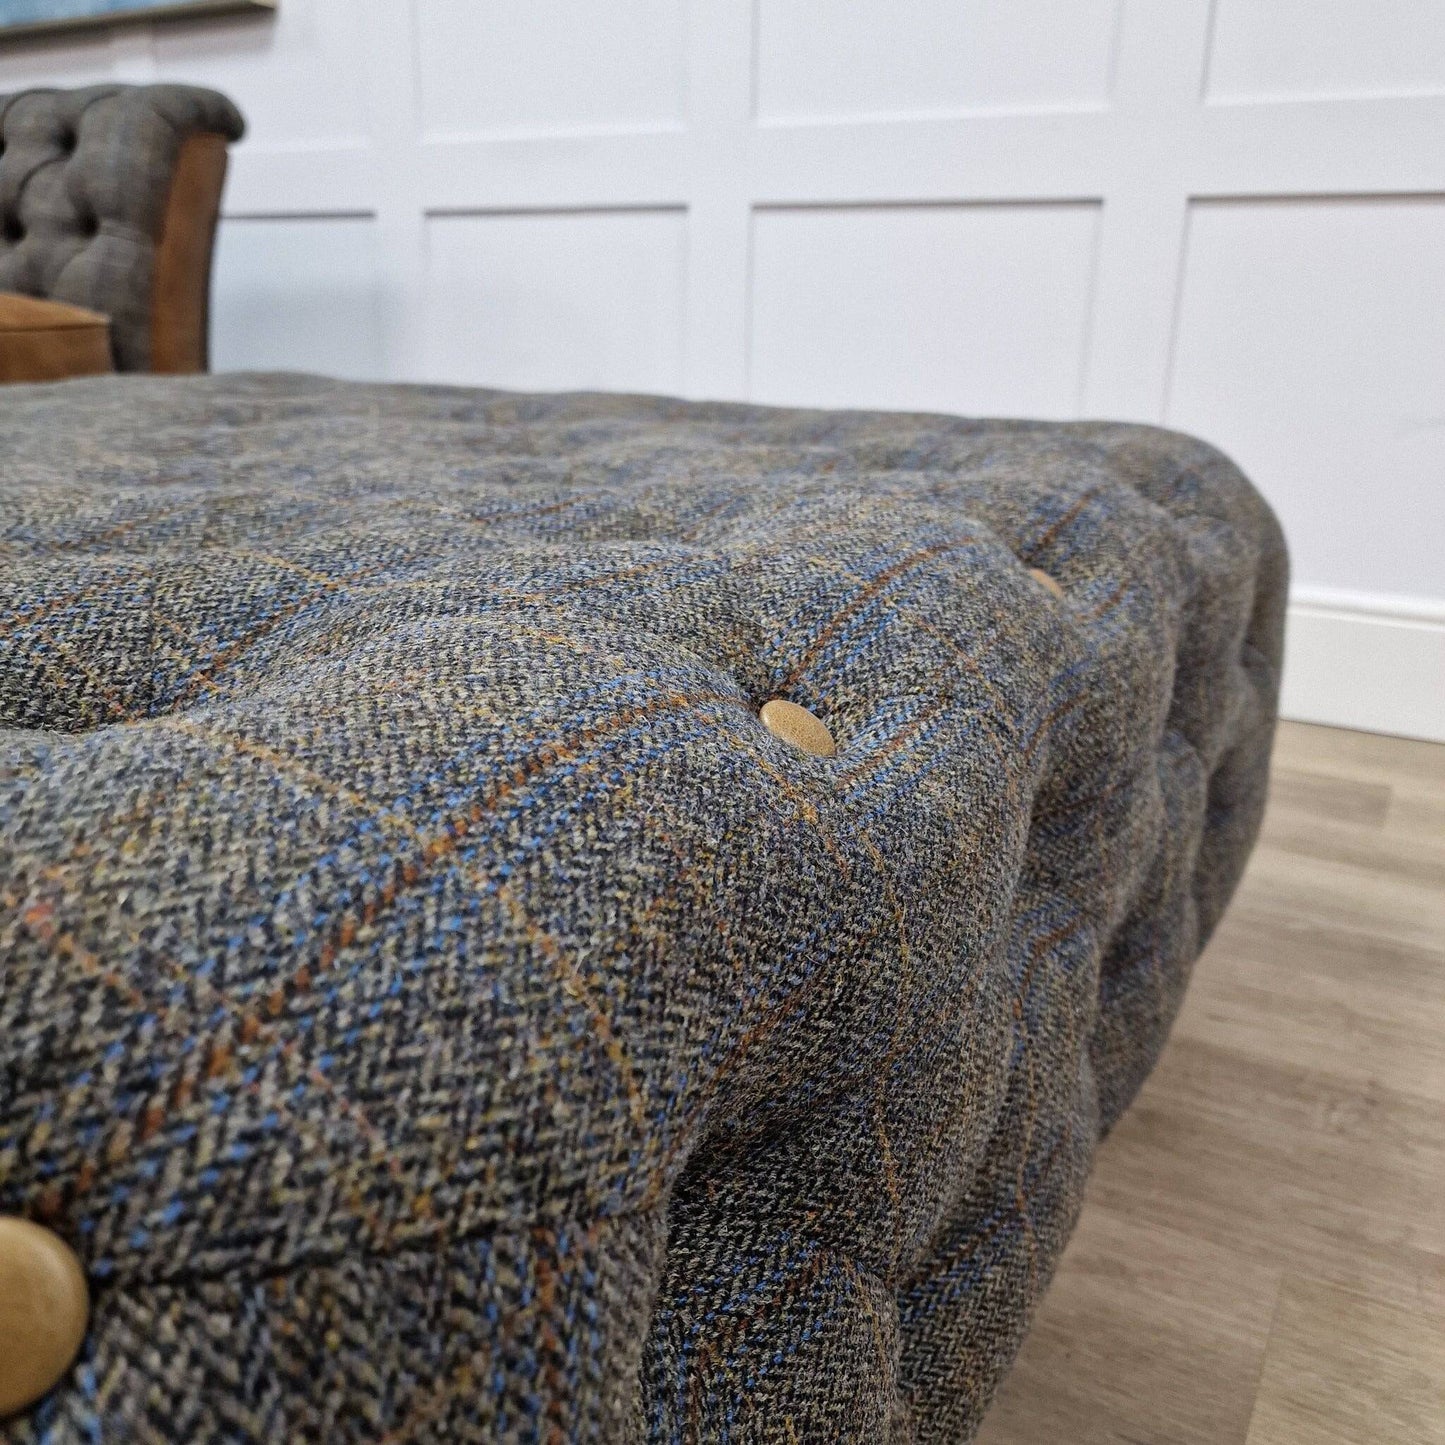 Large Square Harris Tweed Bespoke Footstool | Bernie - Rydan Interiors